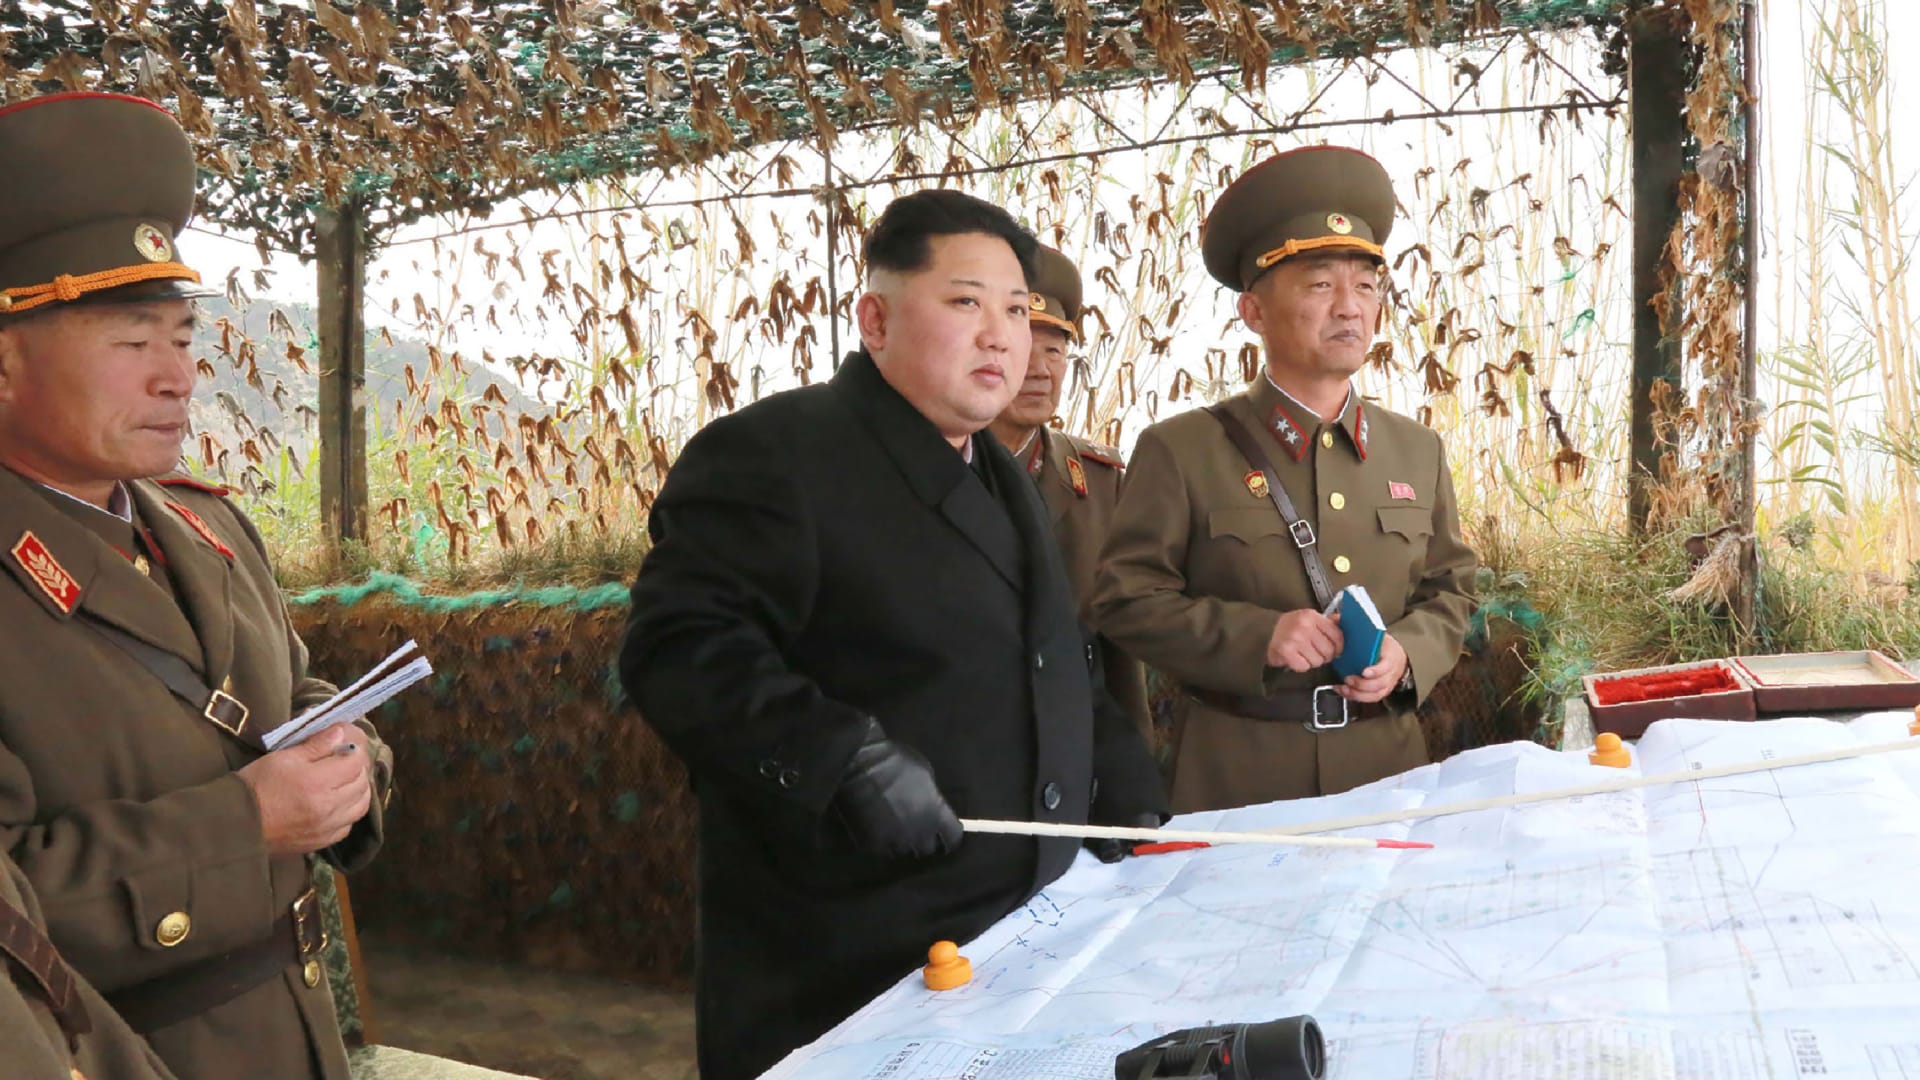 بعد ظهور كيم جونغ أون بيوم.. تبادل لإطلاق النار عبر الحدود بين كوريا الشمالية وكوريا الجنوبية